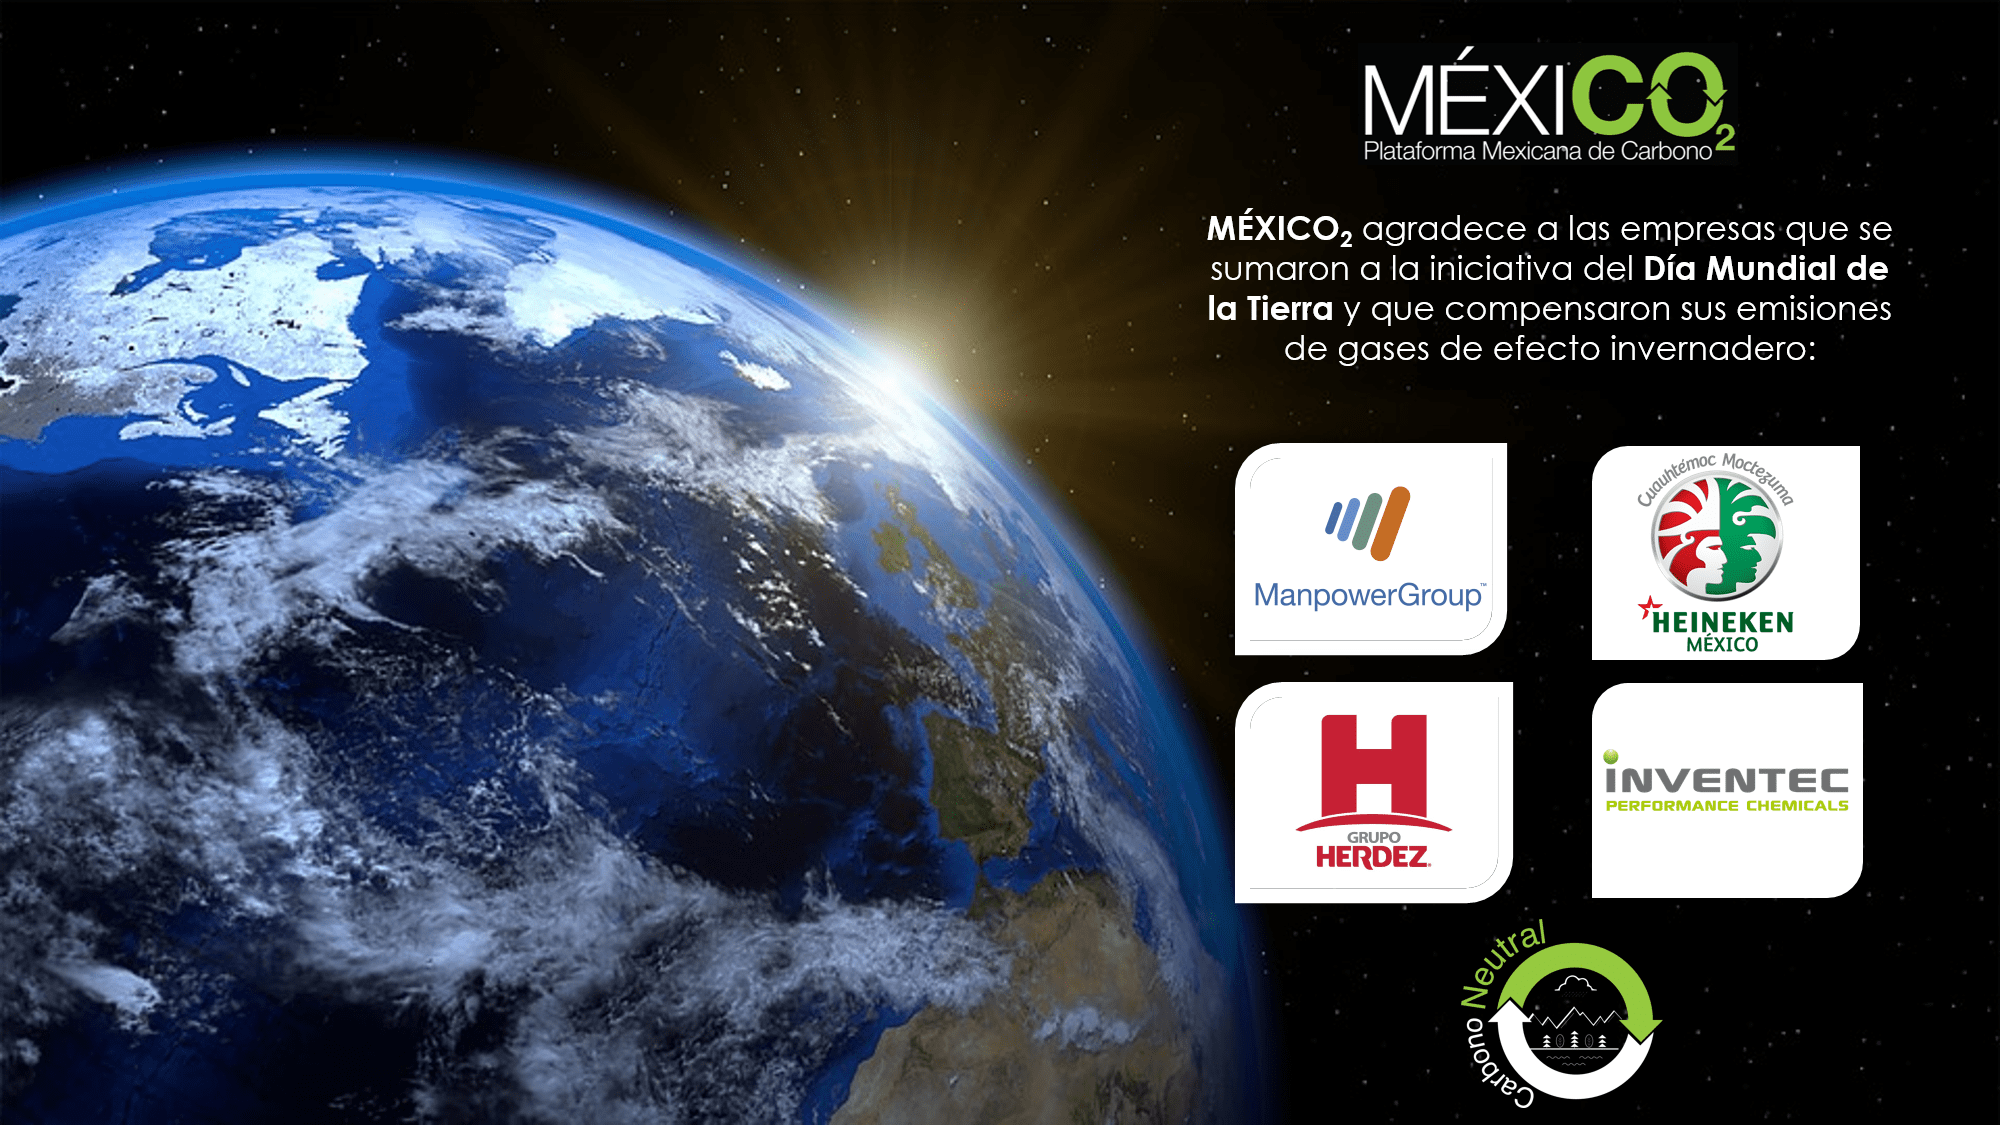 Las empresas en México celebran el Día Mundial de la Tierra compensando sus emisiones